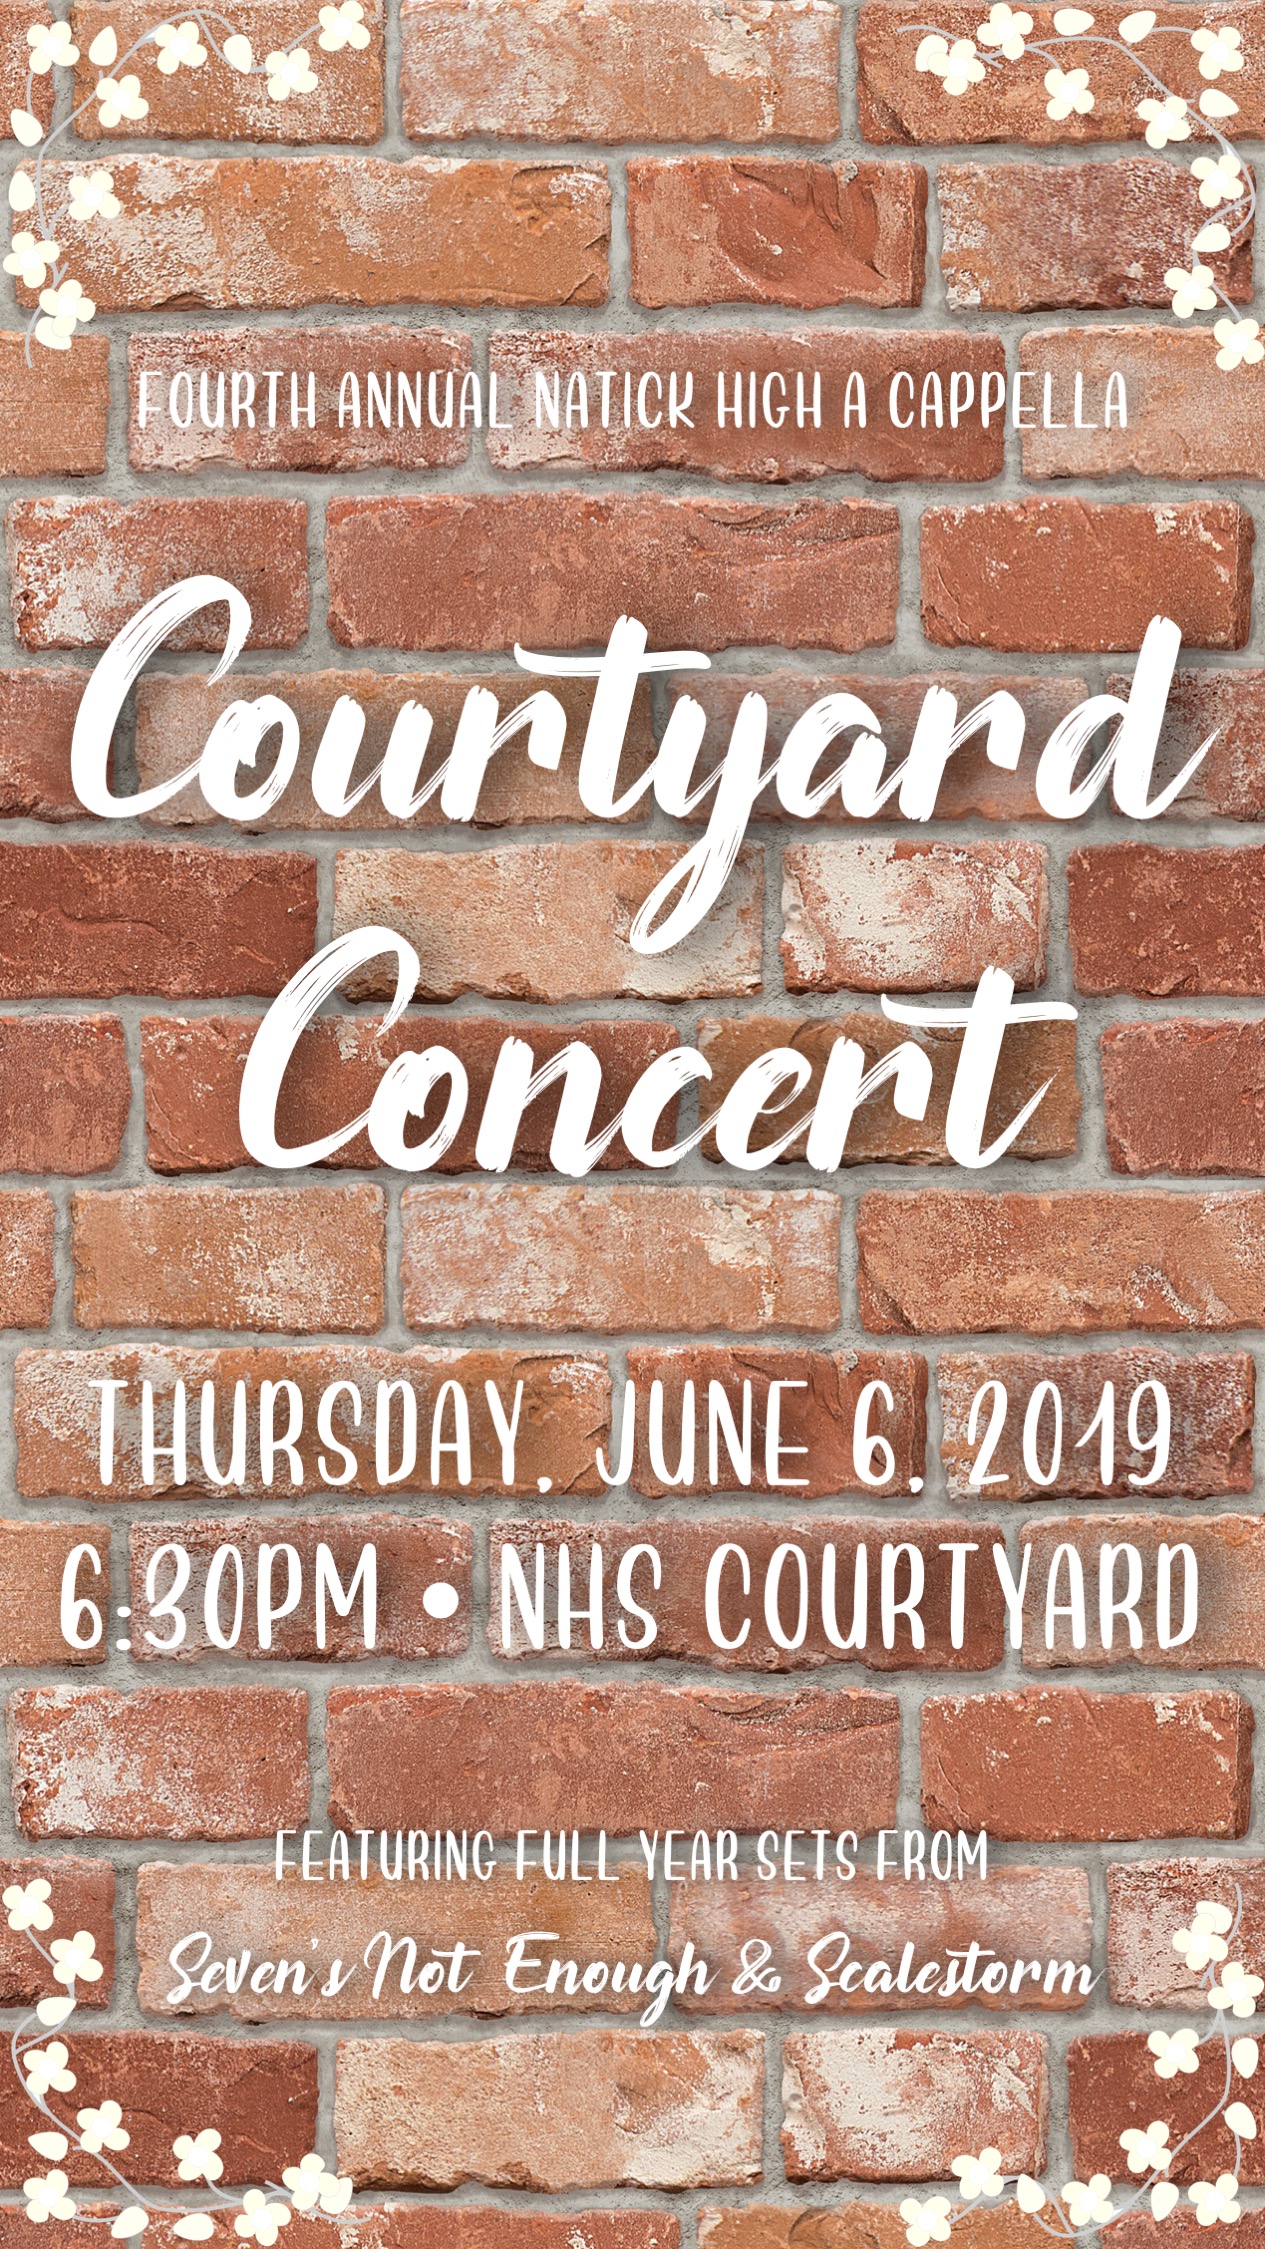 Courtyard Concert
June 6, 2019
Natick High School Courtyard
6:30pm